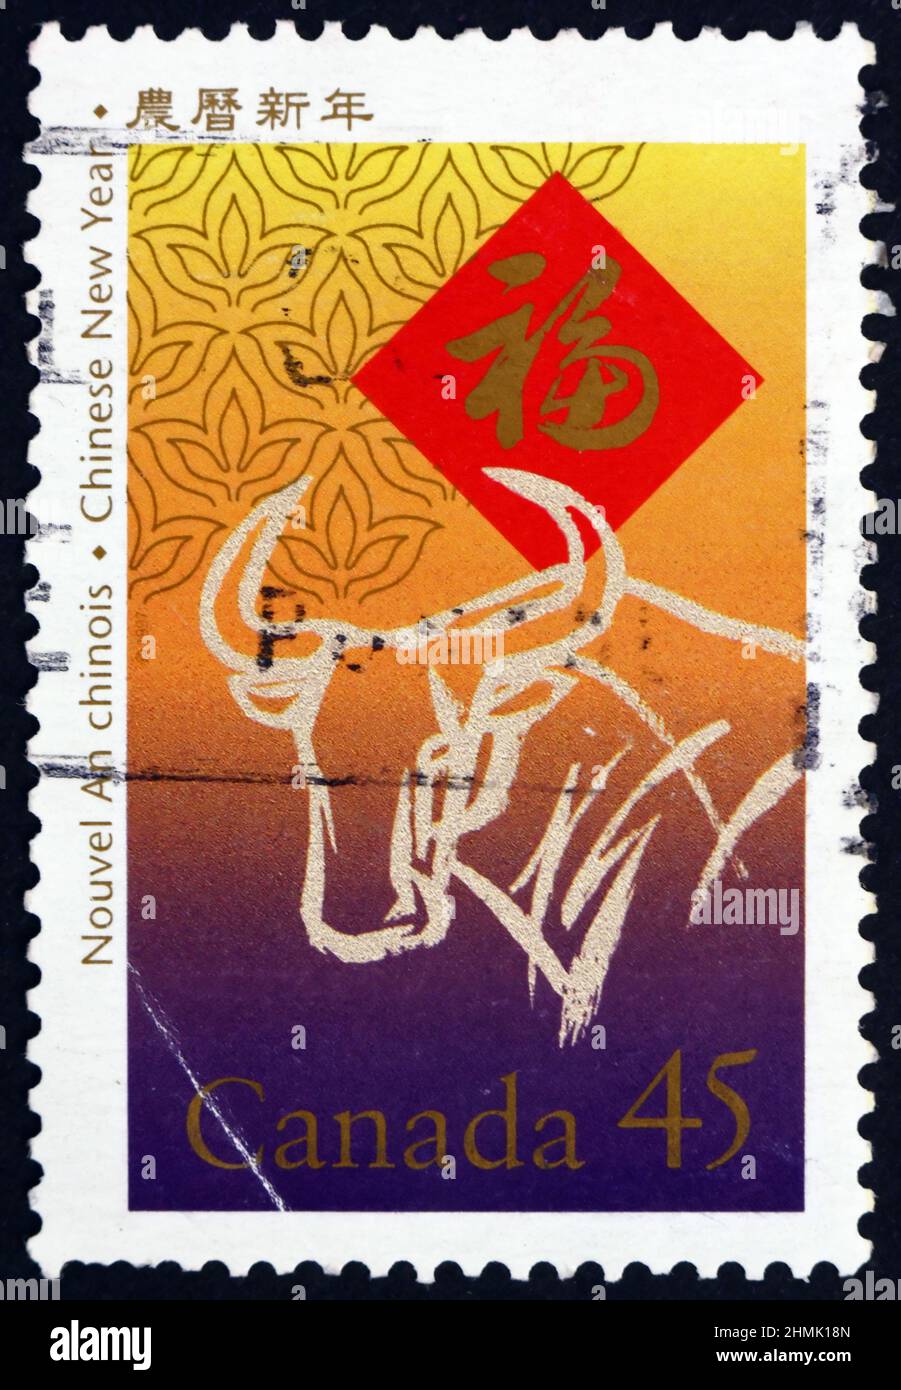 CANADA - VERS 1997 : timbre imprimé au Canada consacré à l'année de l'Ox, nouvel an chinois 1997, vers 1997 Banque D'Images